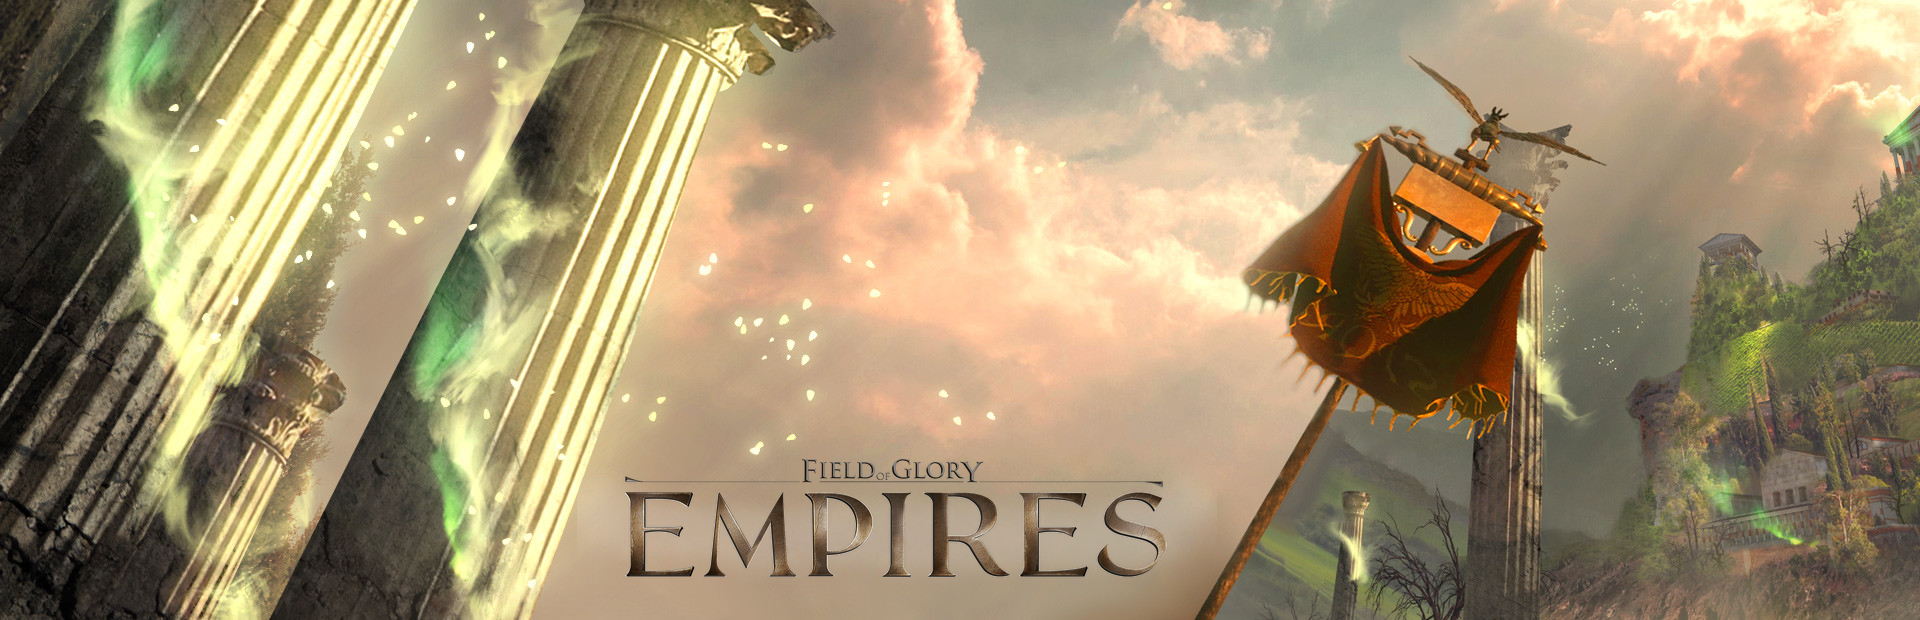 دانلود بازی Field of Glory: Empires برای پی سی | گیمباتو